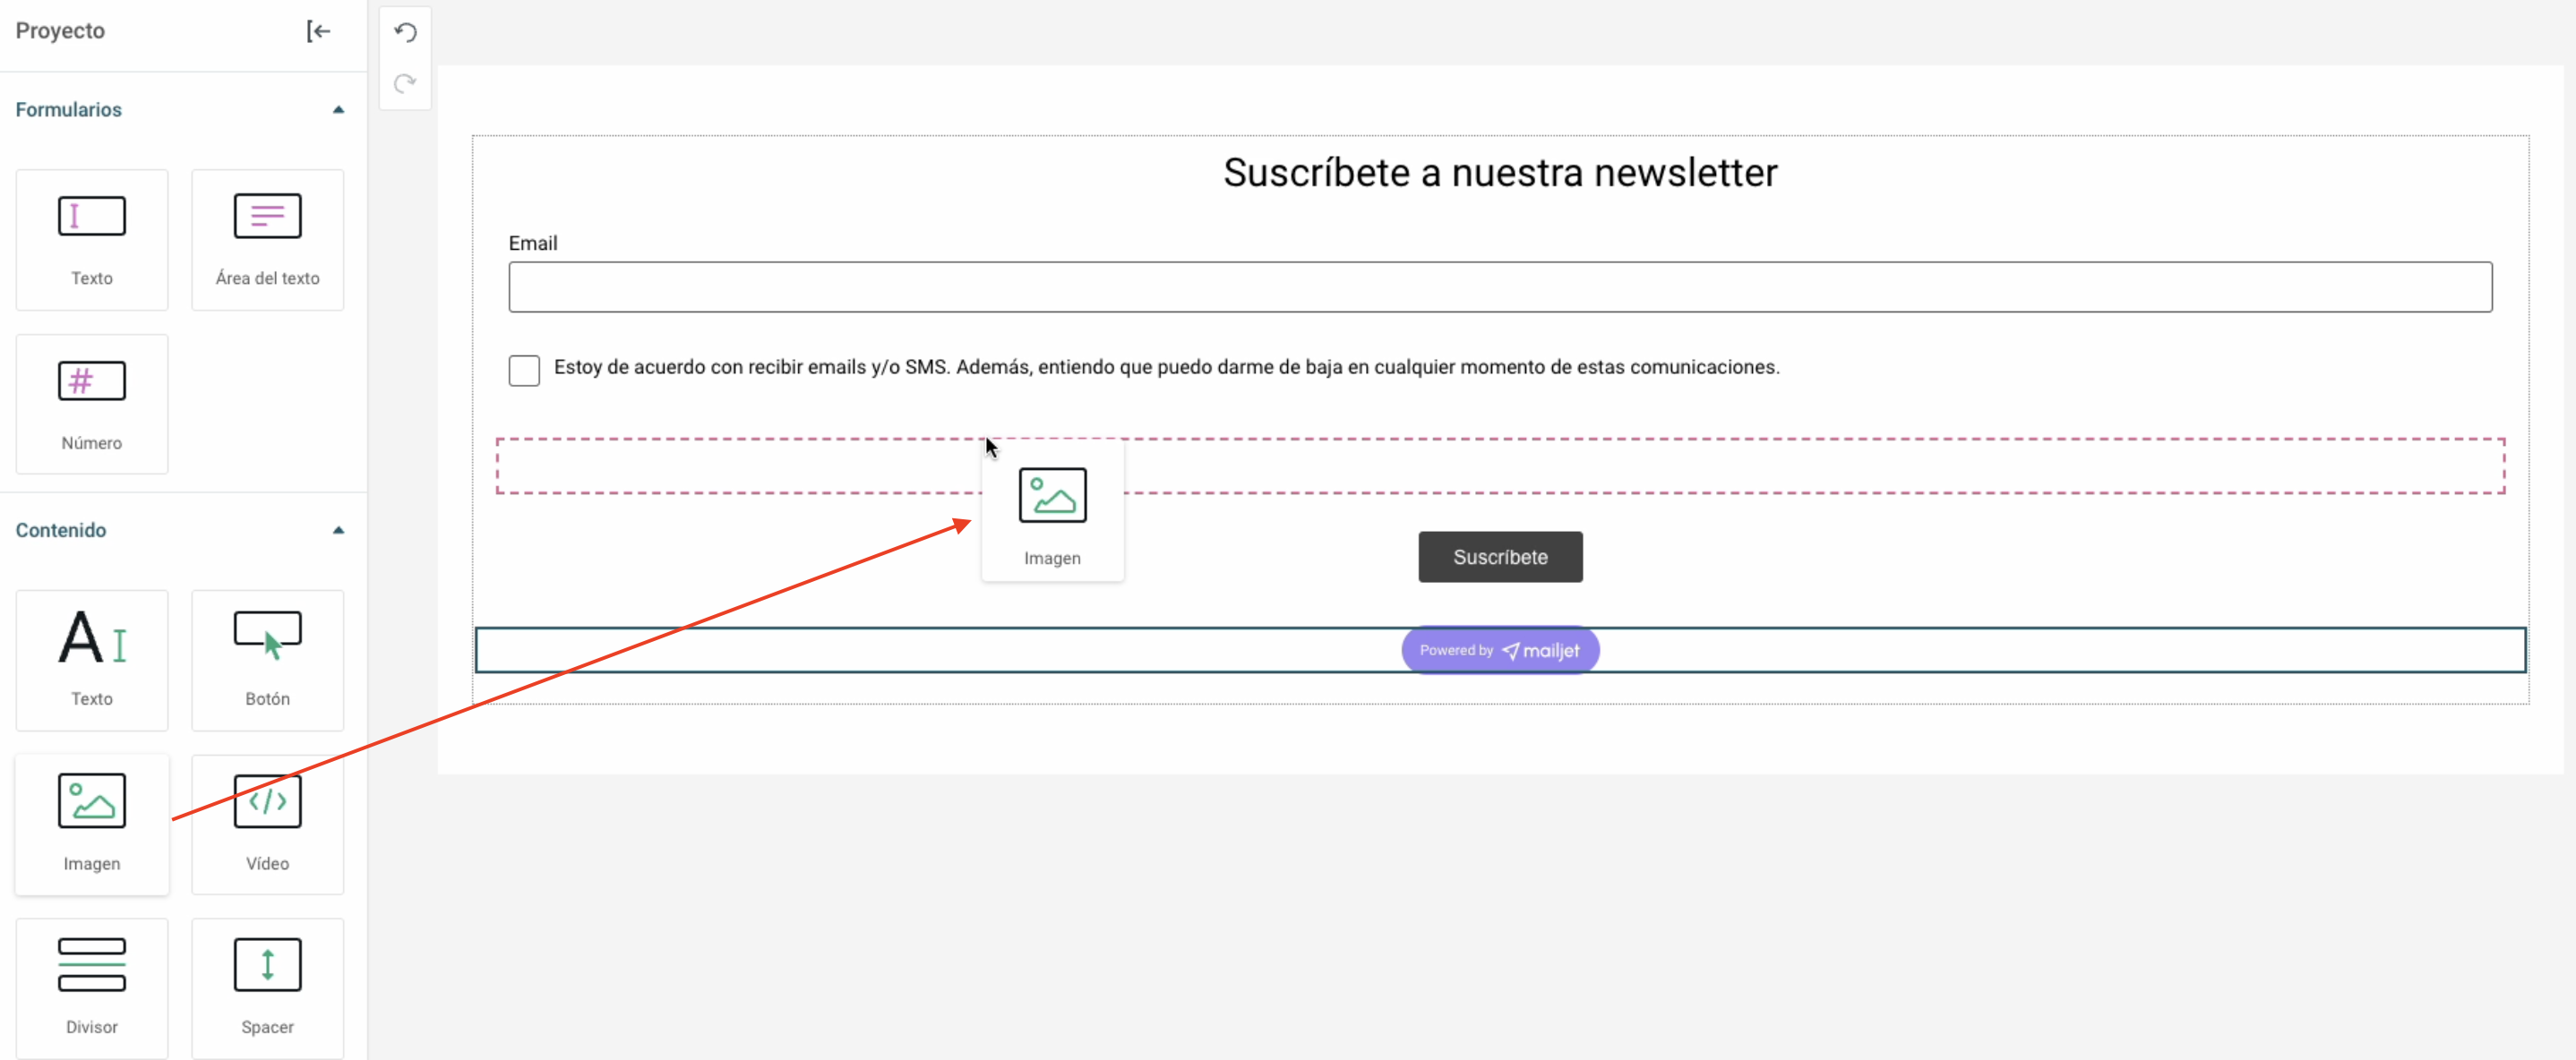 Captura de pantalla de la herramienta para diseñar formularios en Mailjet.